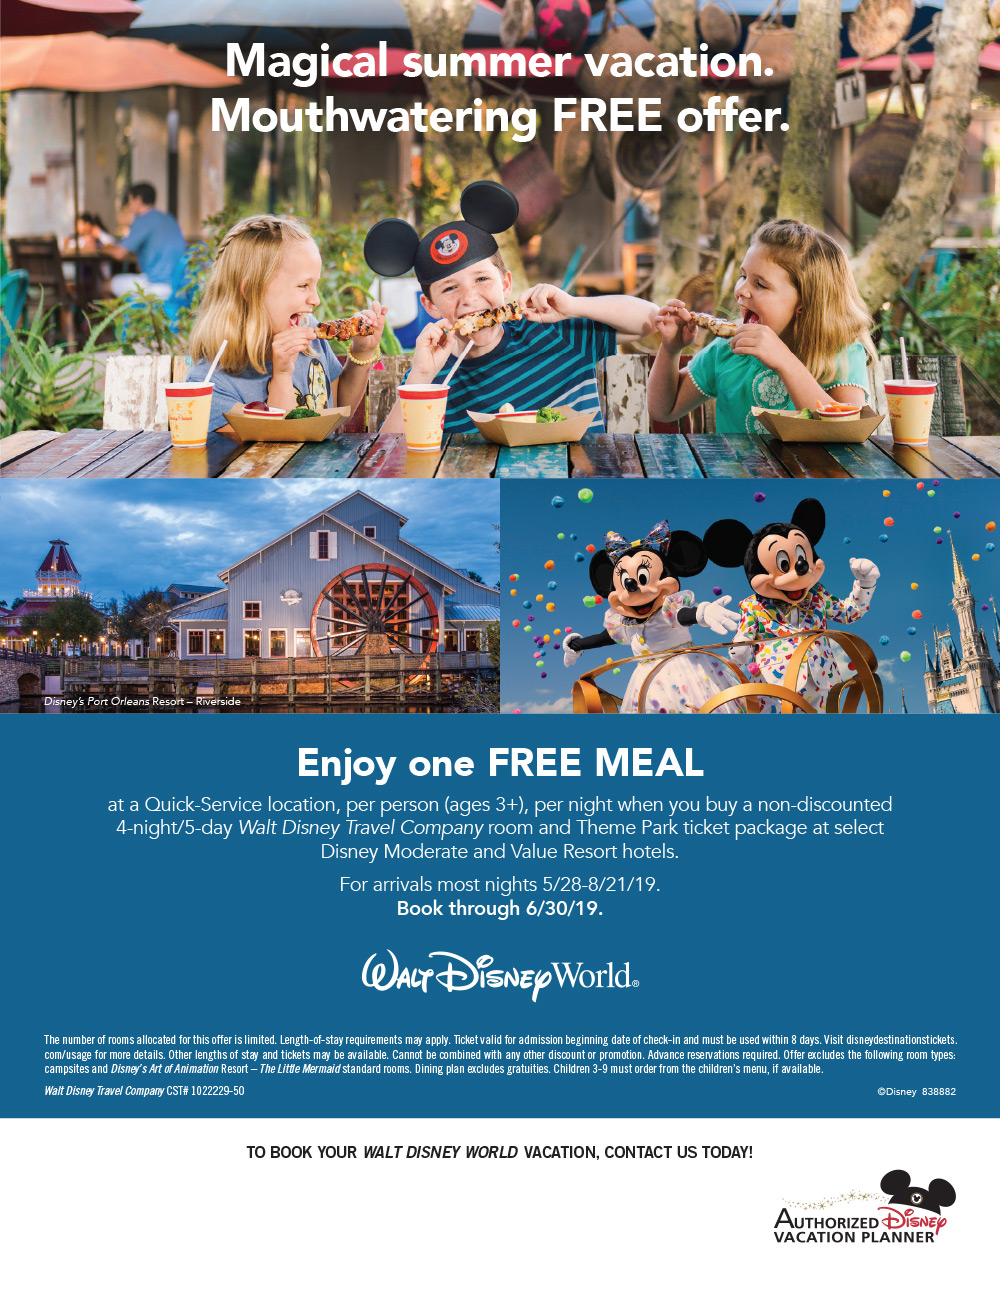 Walt Disney World Free Meal Deal Mouseketrips